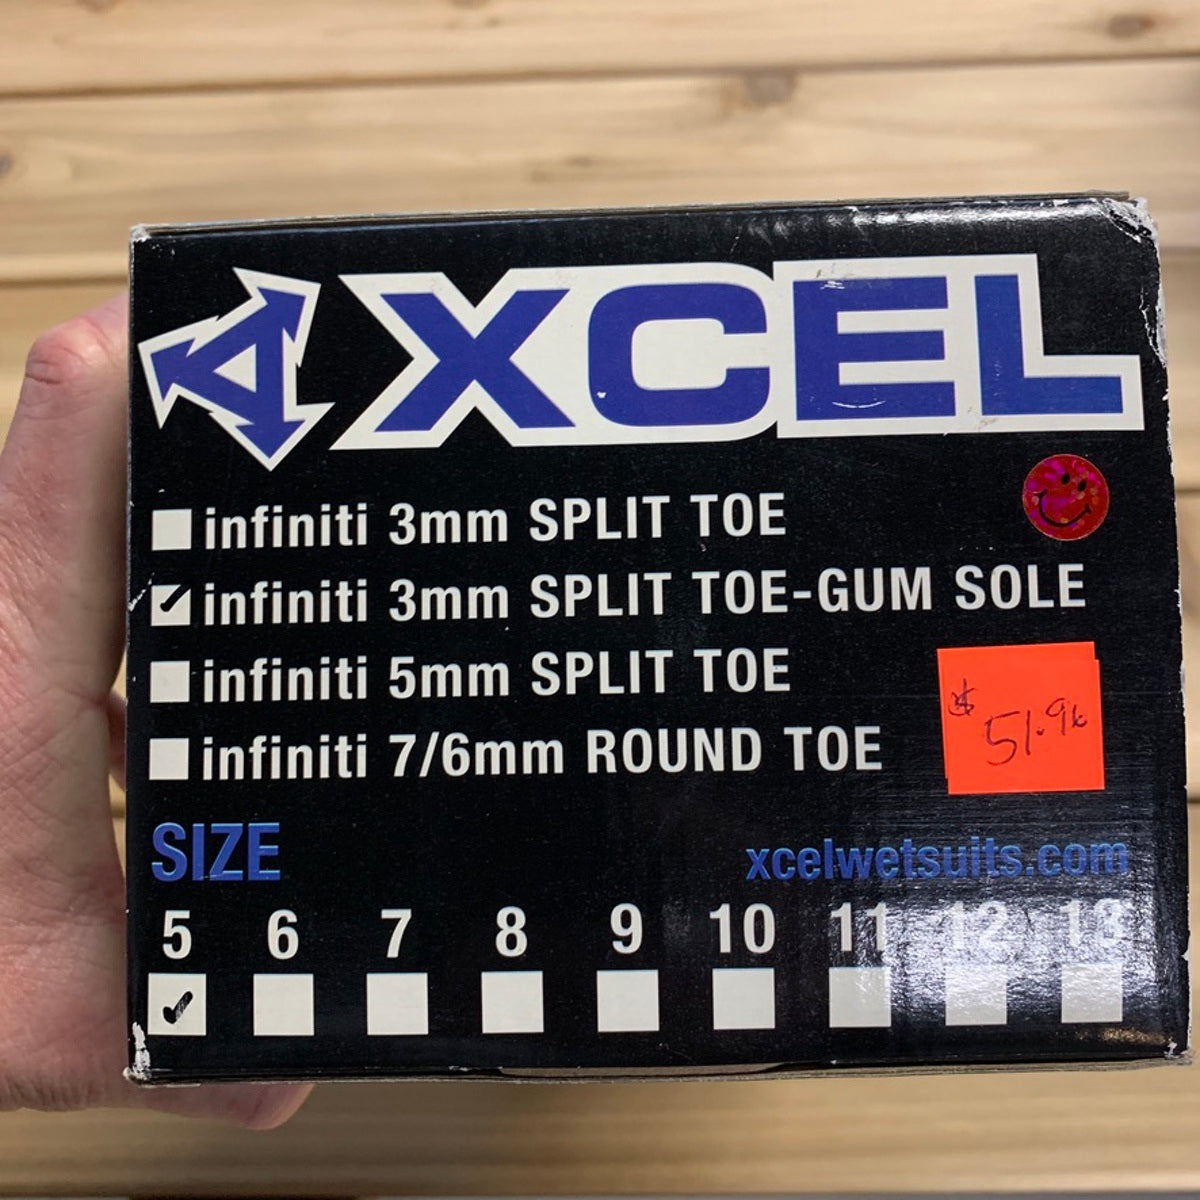 
                  
                    Booties 3mm XCEL Infiniti Split Toe - Gum Sole 🔥 DEAL
                  
                